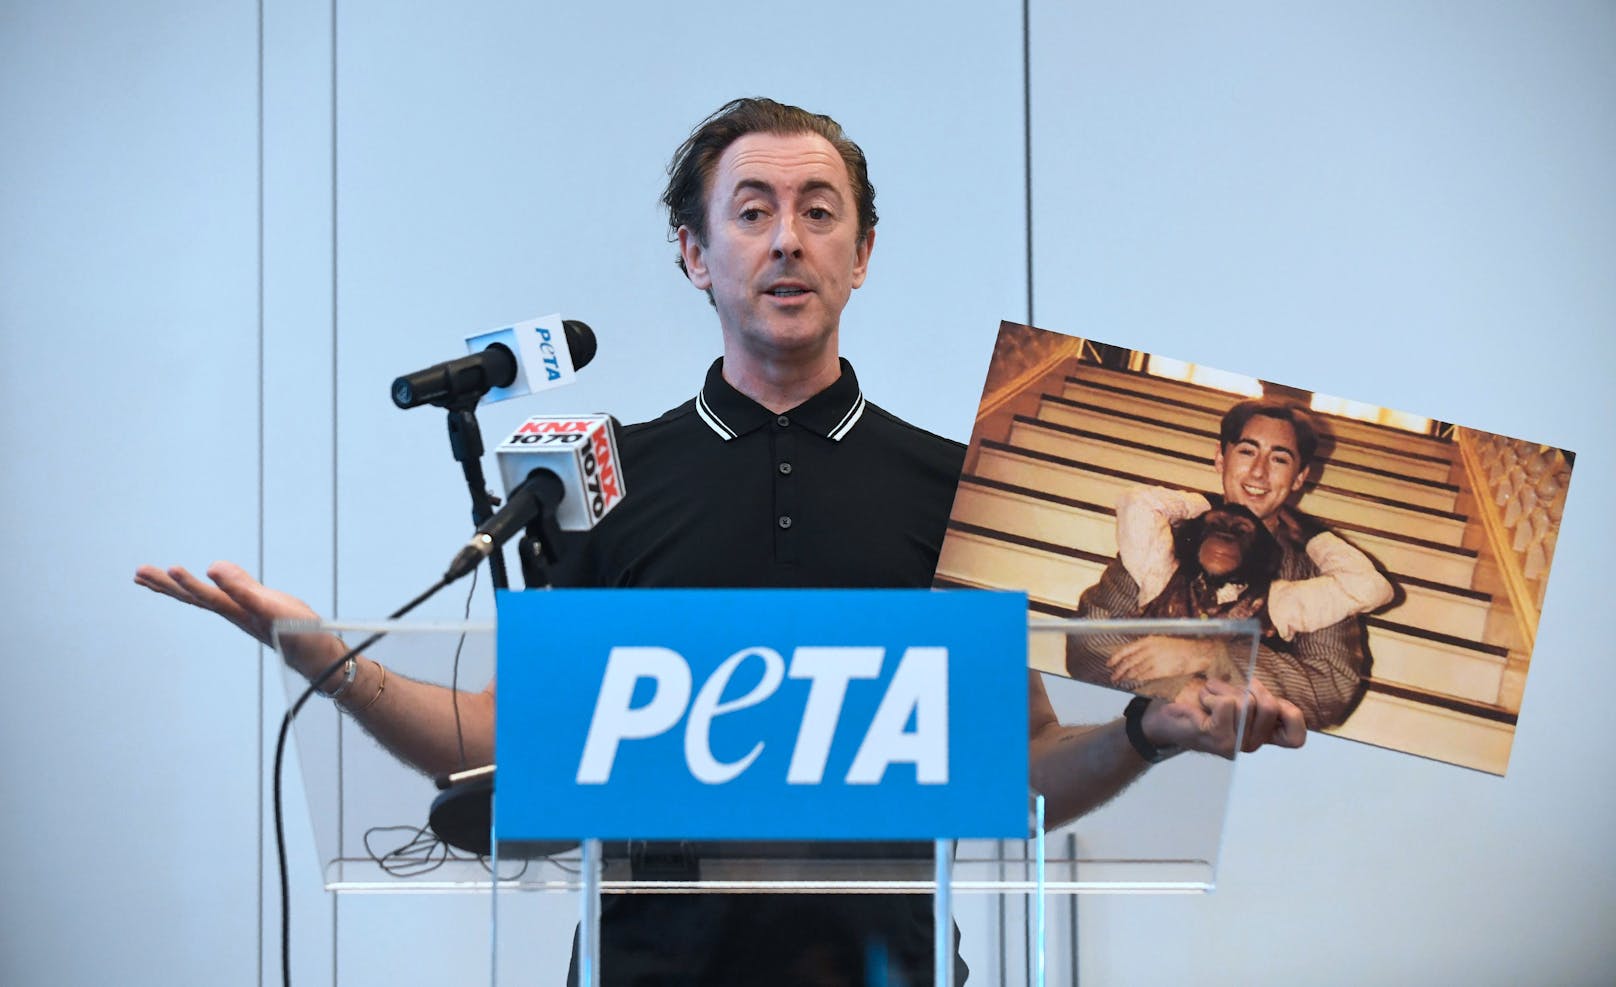 Der britische Schauspieler <strong>Alan Cumming</strong> kämpft mit Tierrechtsorganisation PETA um die Freilassung von 11 Schimpansen aus einer Zuchtanlage, seit er selbst mit einem Schimpansen im Film "Buddy" drehen durfte. 